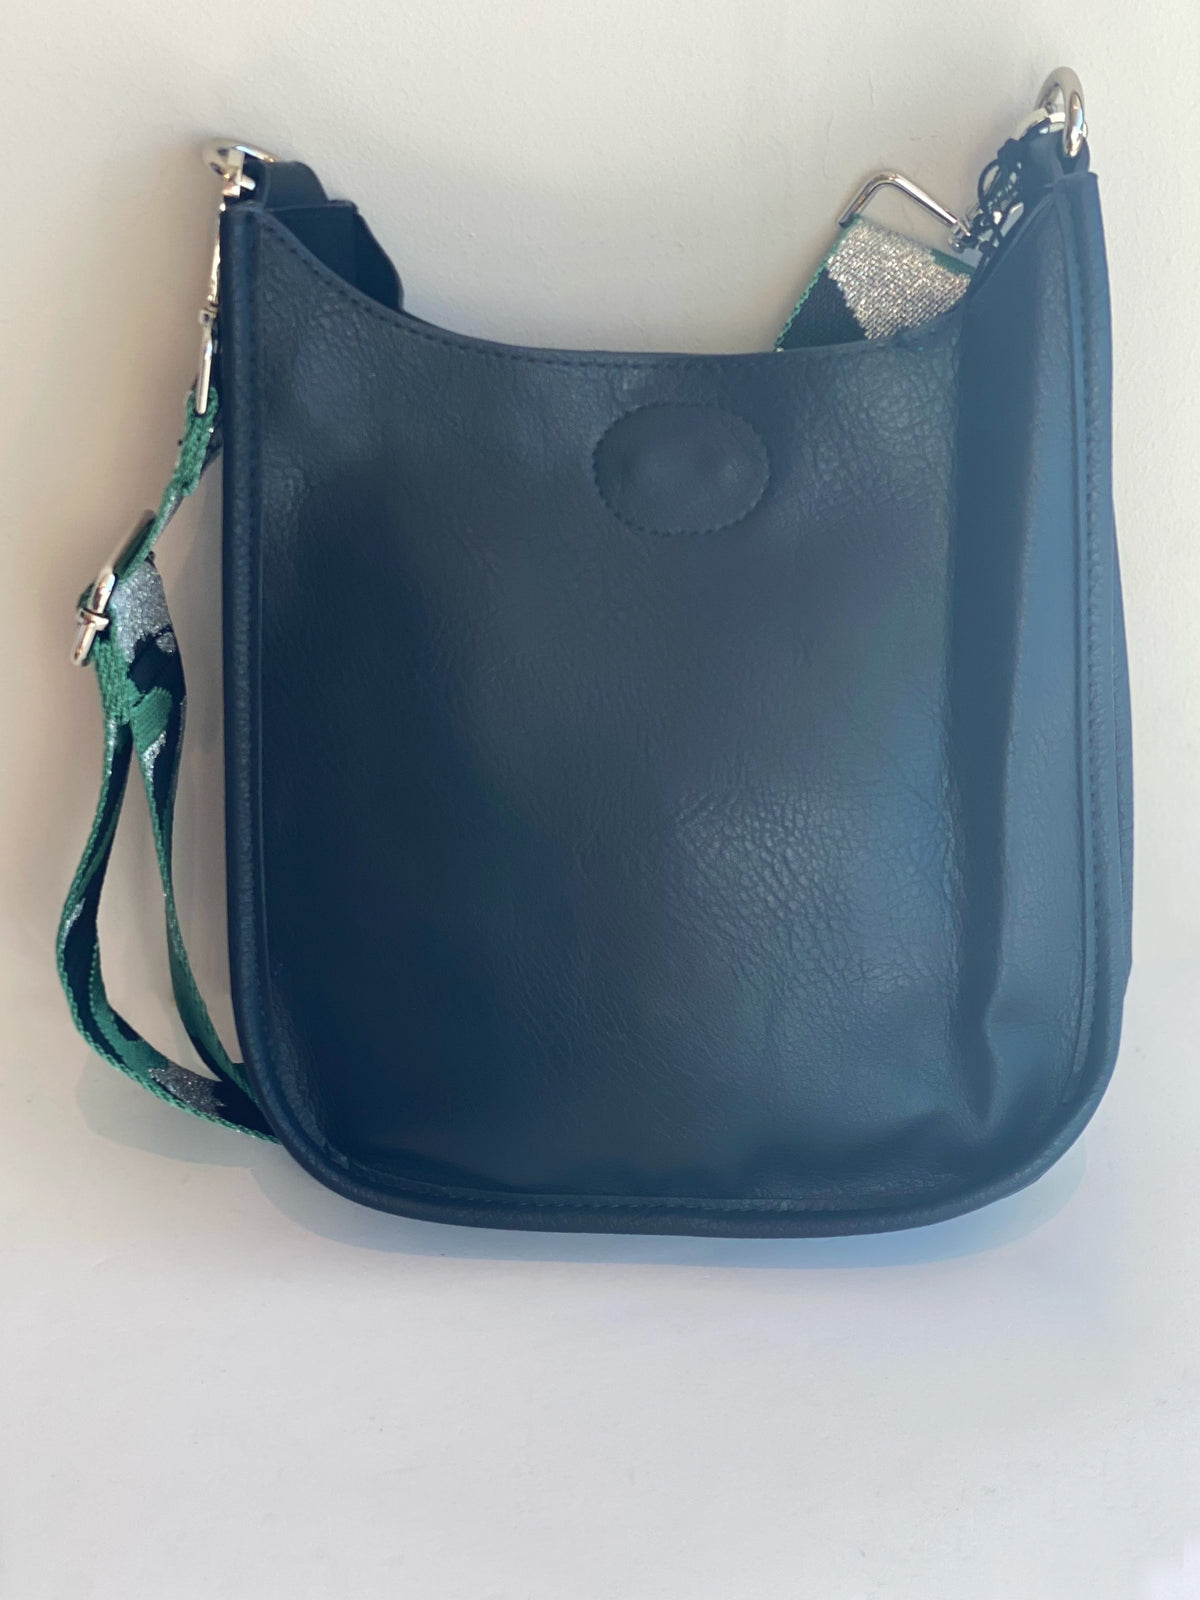 Ahdorned Mini Messenger Bag